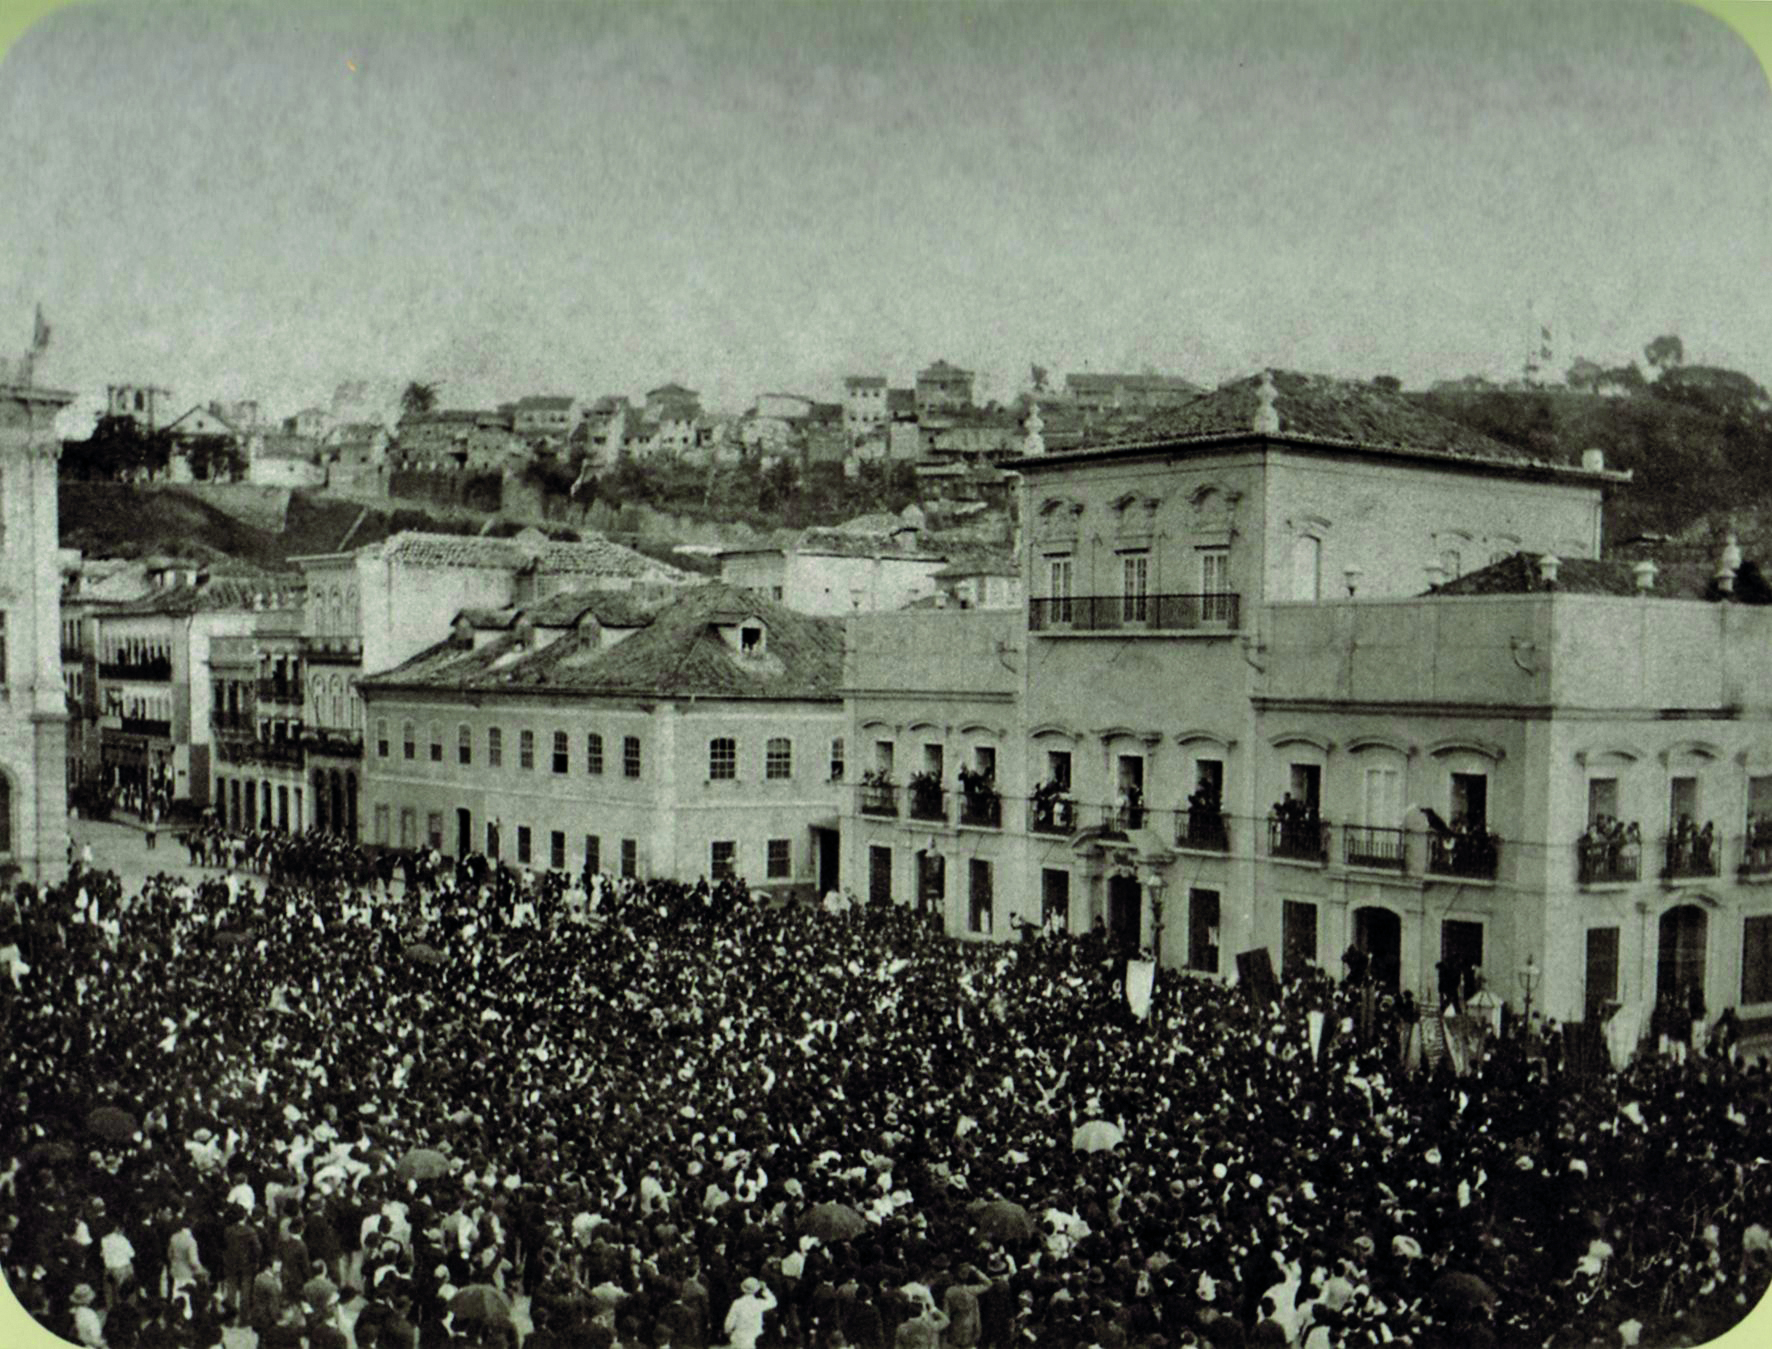 Fotografia em preto e branco. Uma multidão de pessoas aglomeradas em uma rua cercada por construções baixas de estilo colonial. Na porção direita da imagem, no Paço Imperial, pessoas ocupam os balcões das janelas e acenam para a multidão.